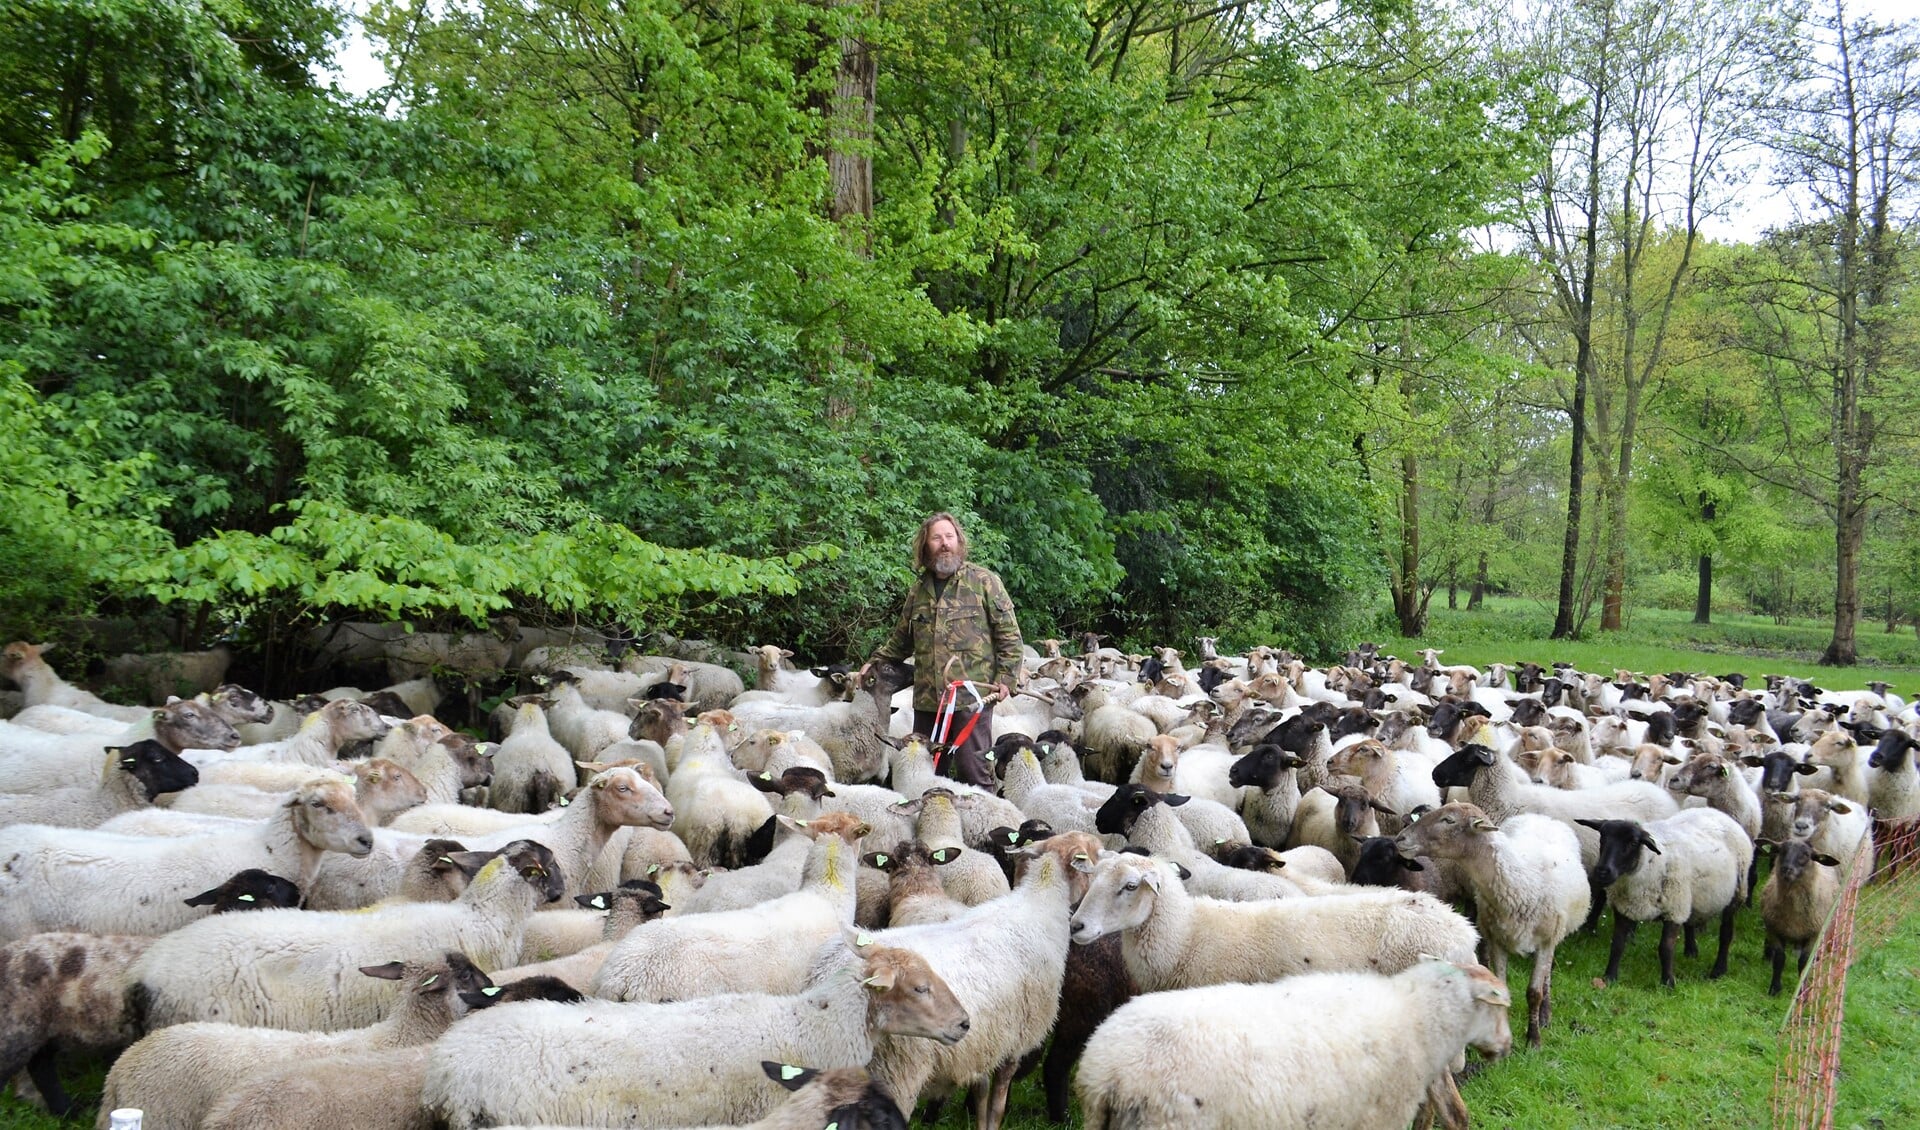 Thomas van der Meij: 'De schapen herkennen mijn stem en komen gelijk naar mij toe, zeker als ze honger hebben' (foto: Inge Koot)